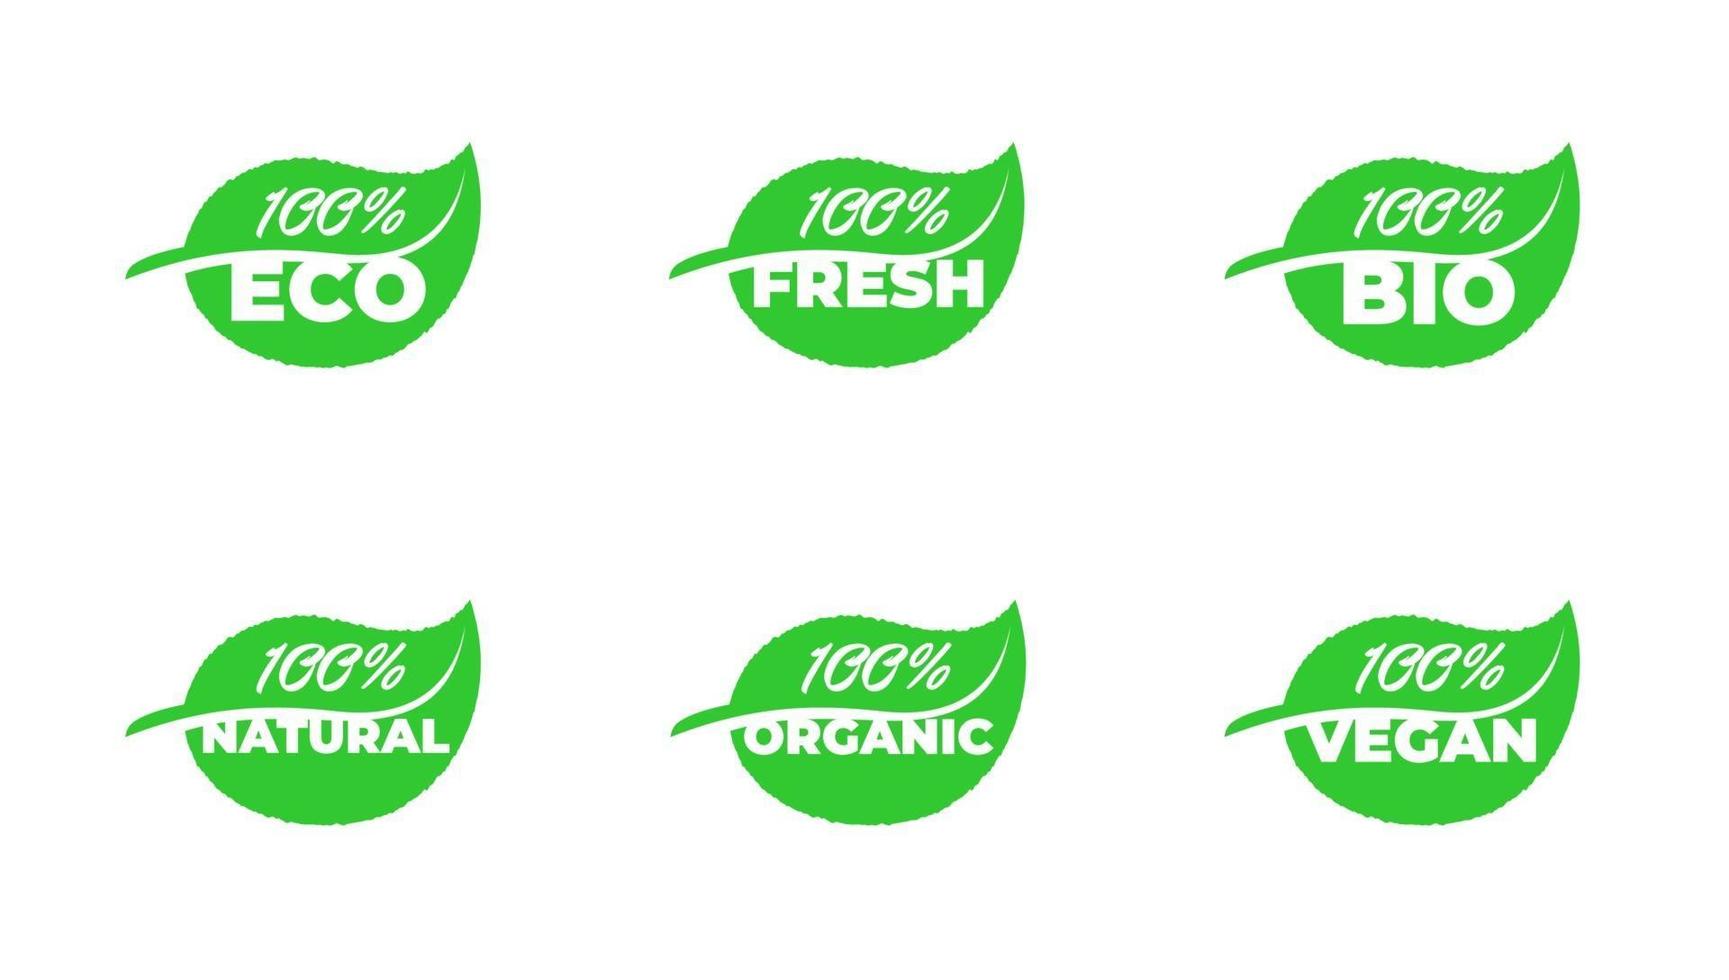 Colección de insignias de productos de hoja de grean vegana orgánica natural ecológica fresca 100% certificada de calidad. Vector conjunto de etiquetas de plantas de ecología saludable ilustración eps aislada